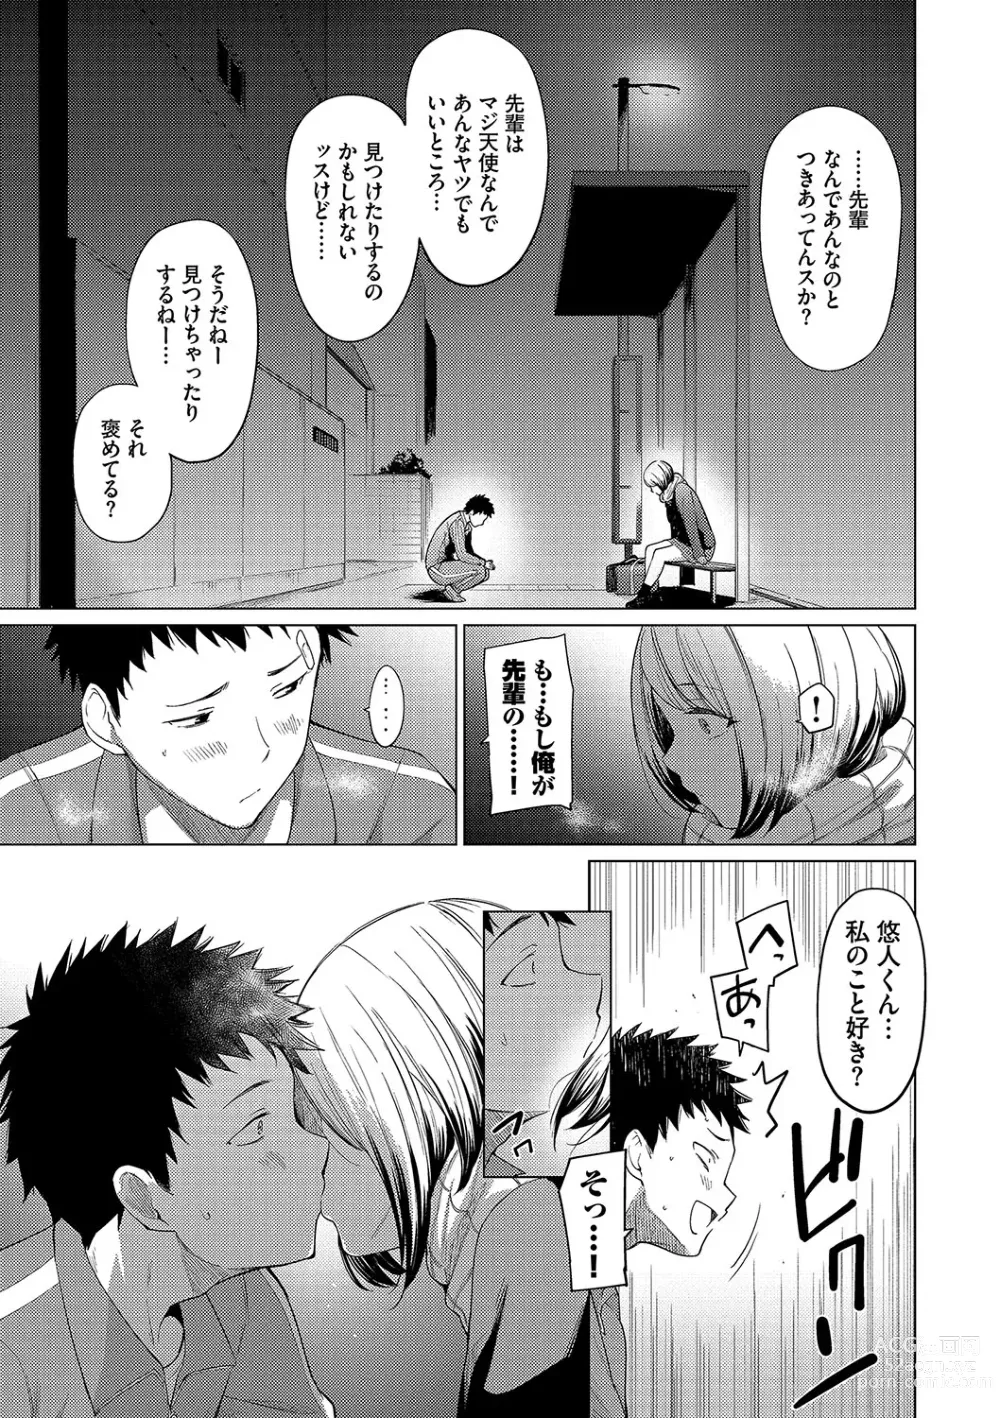 Page 9 of manga Akogare Kogare